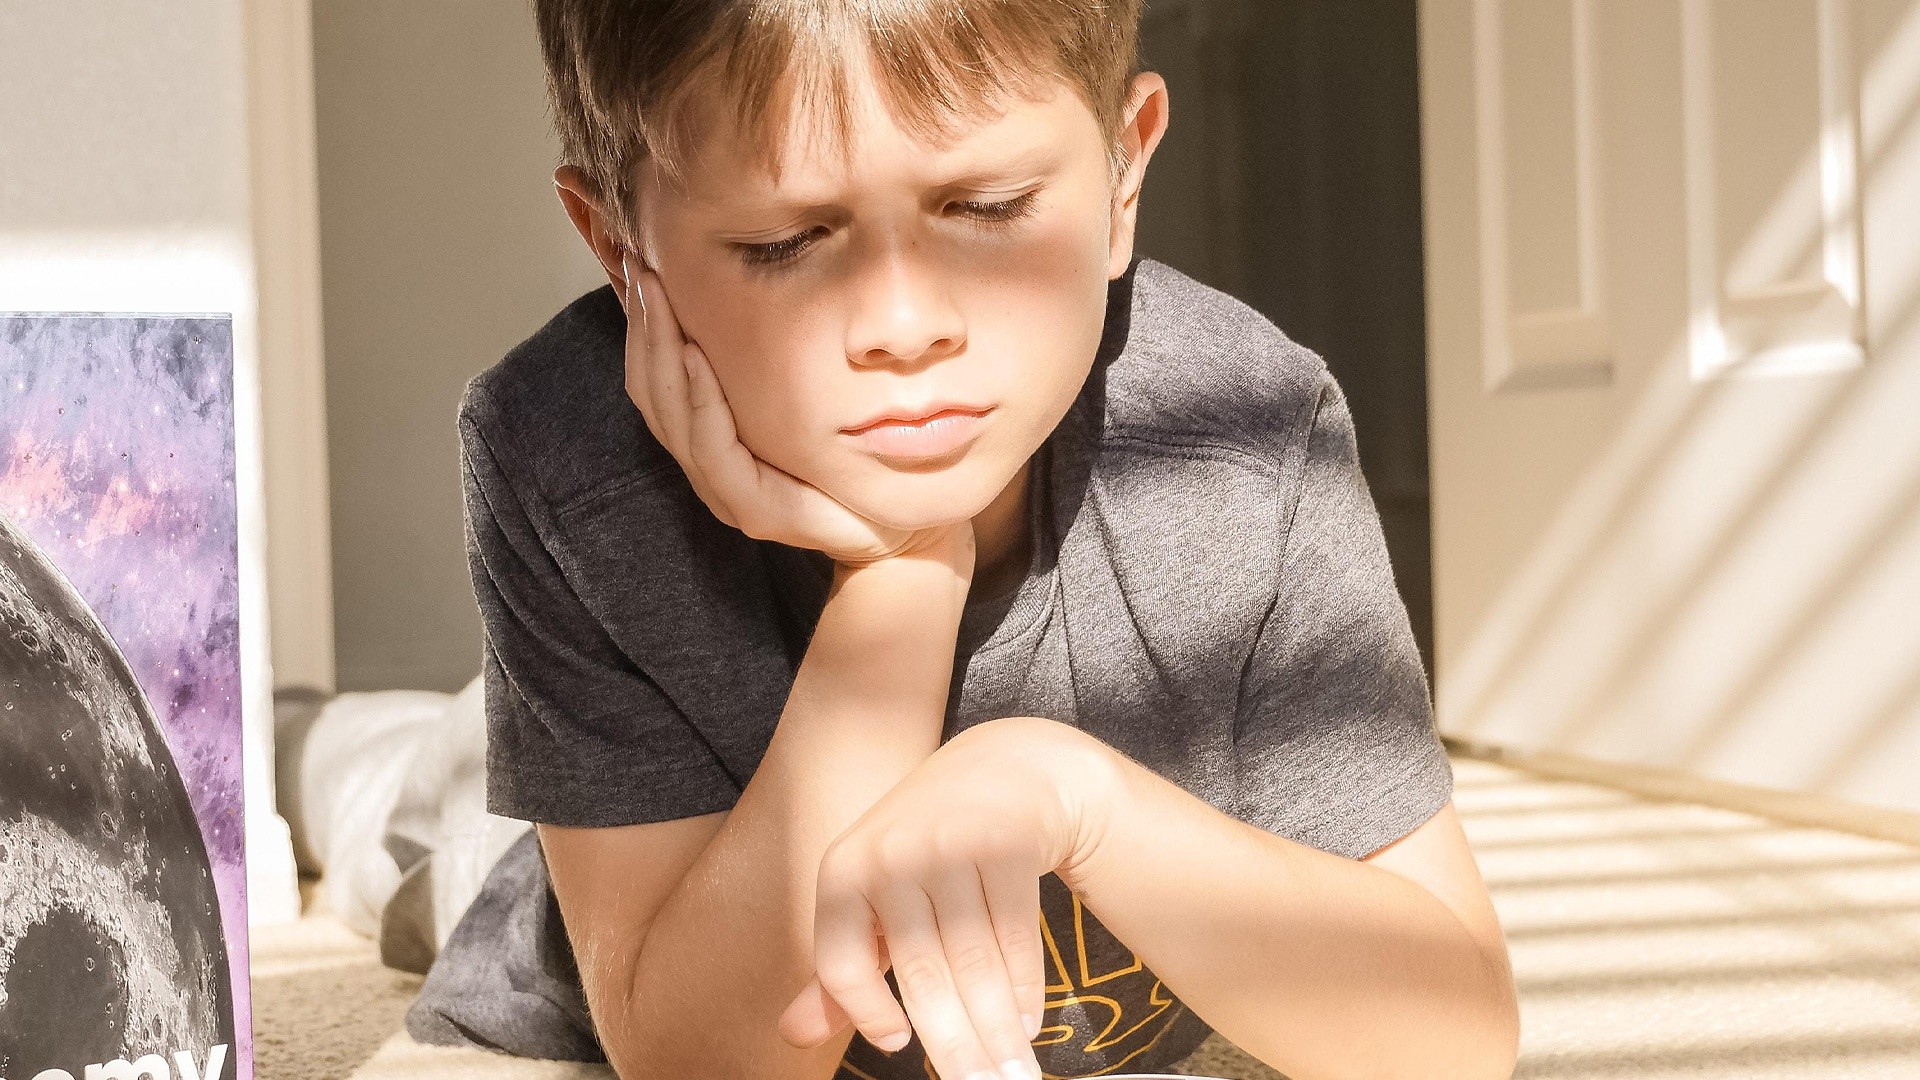 Nowa plaga: Problemy z koncentracją u dzieci. Jak sobie z nią radzić? | Magiczny Dywan